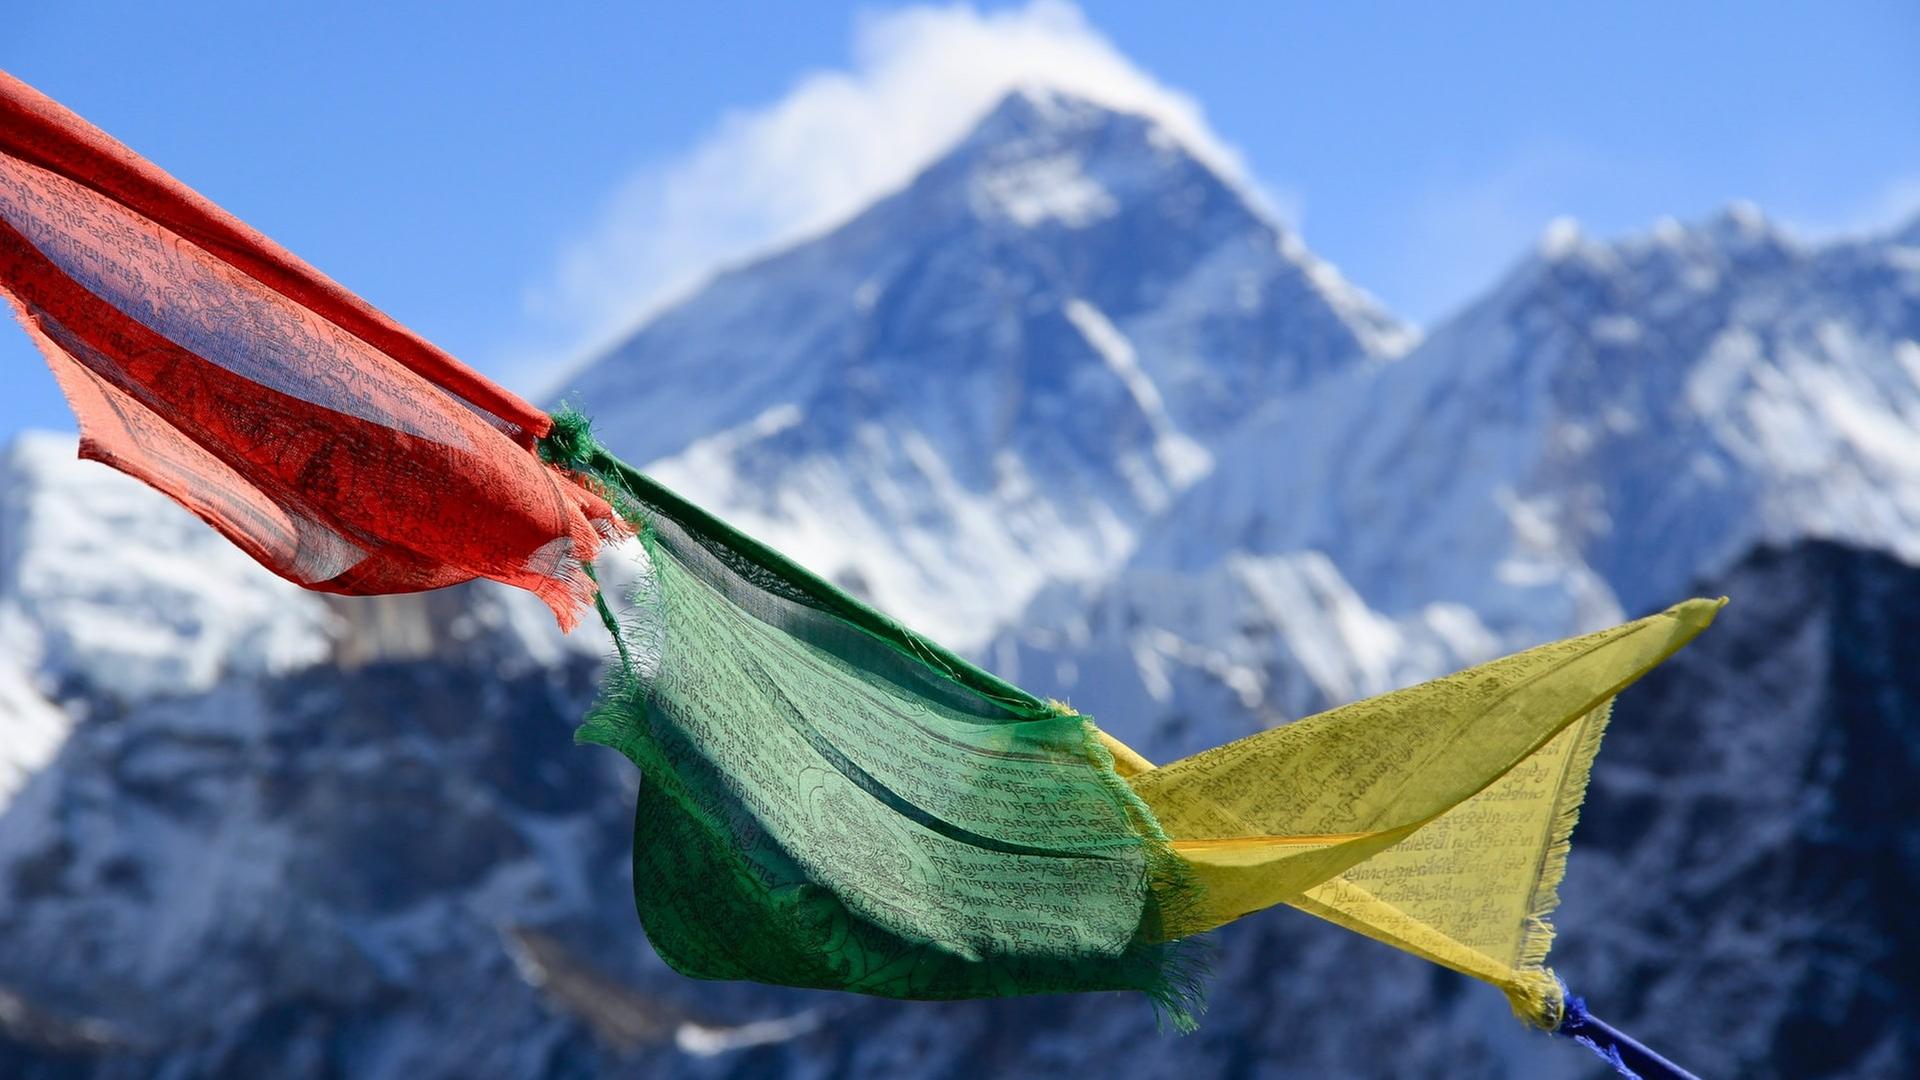 Blick auf das Khumbu Valley in Nepal und den Mount Everest, Chomolungma.